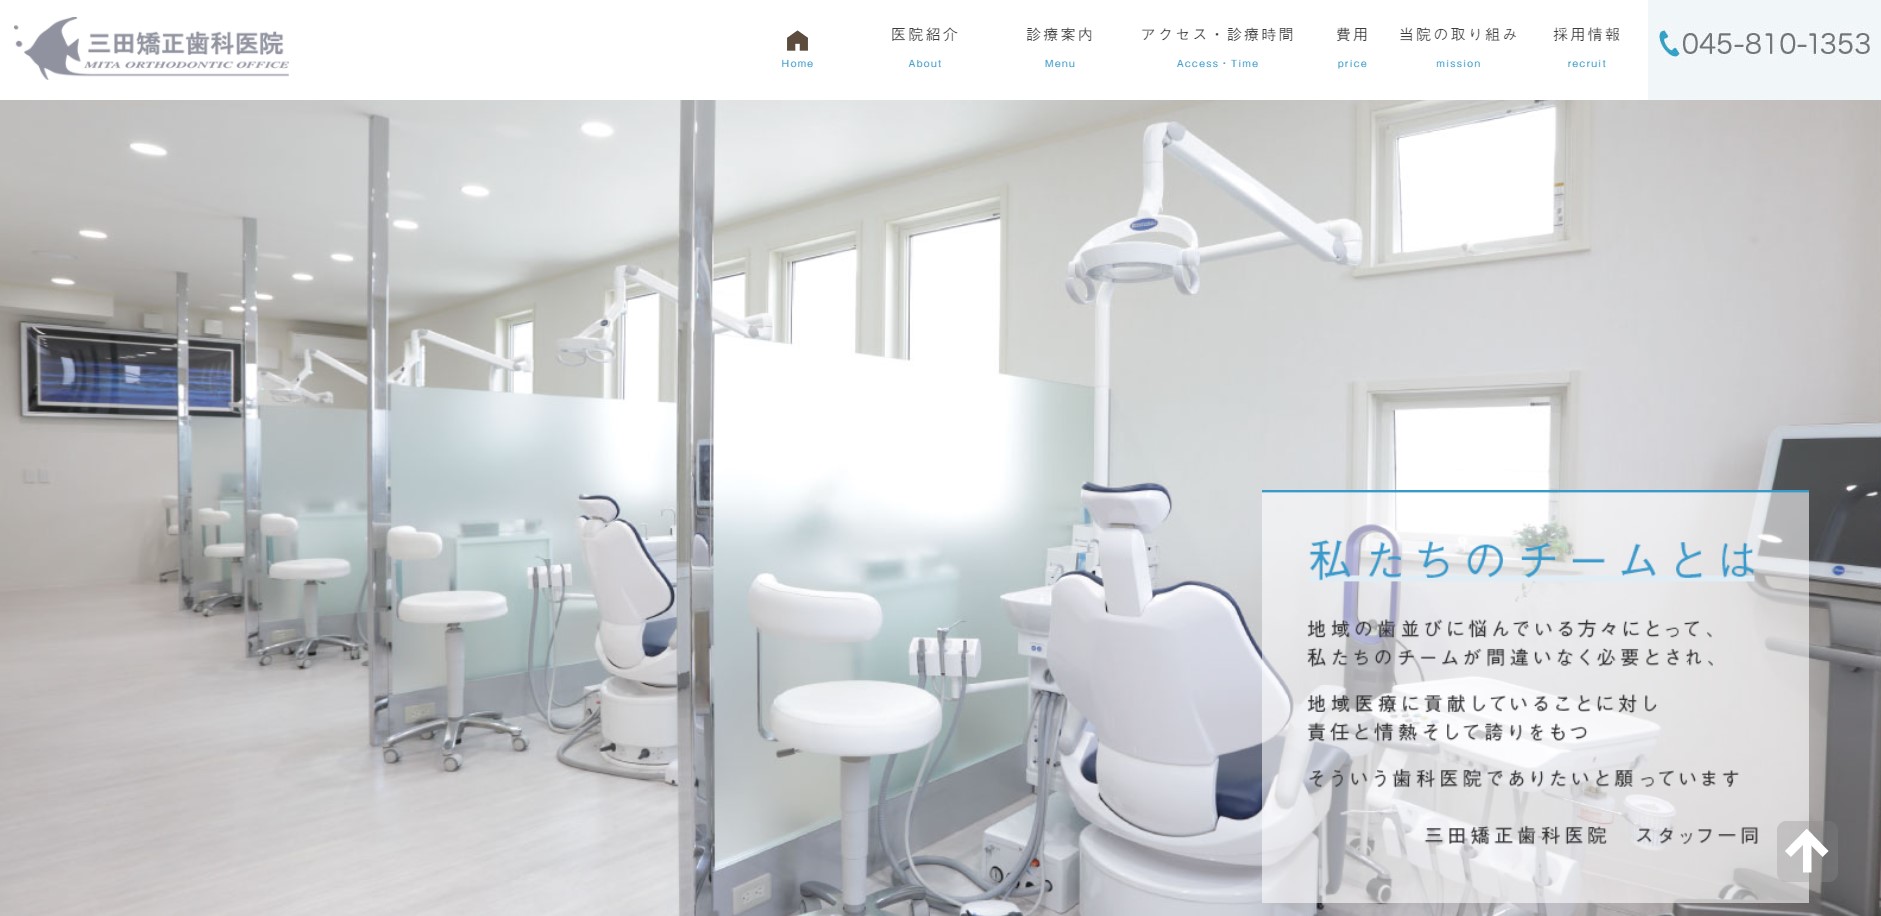 三田矯正歯科医院の公式サイト